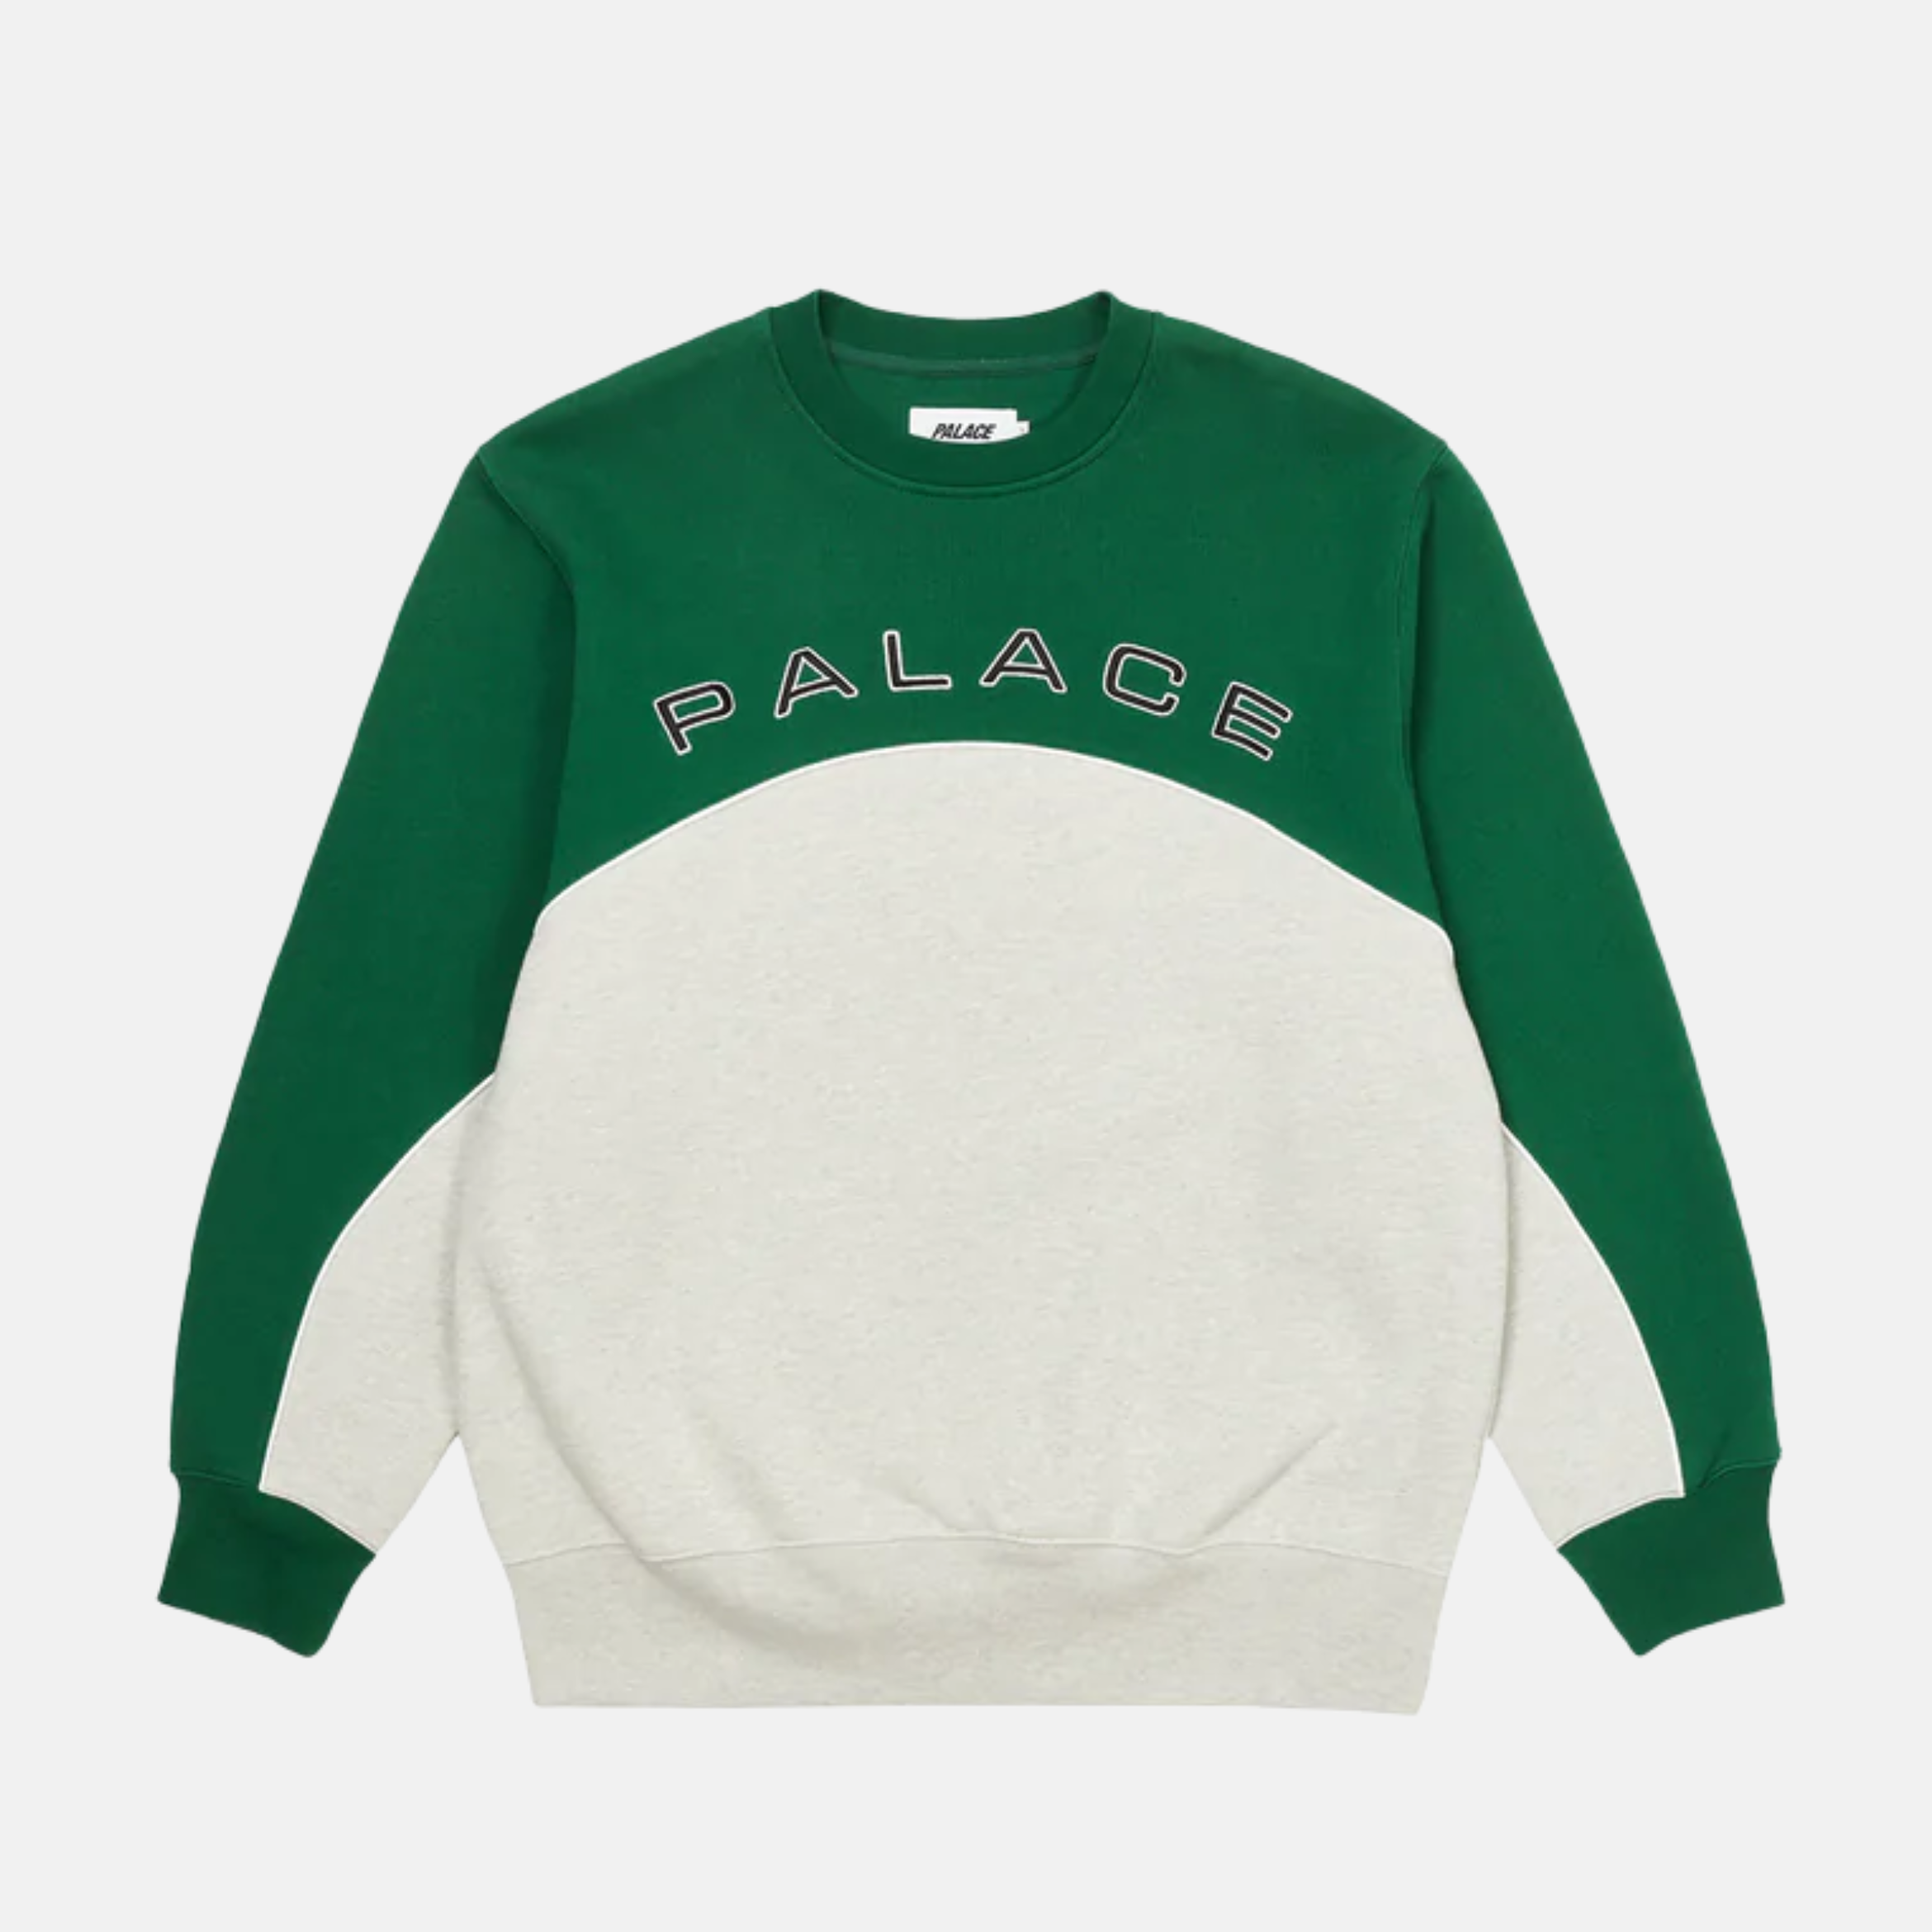 Palace sweater